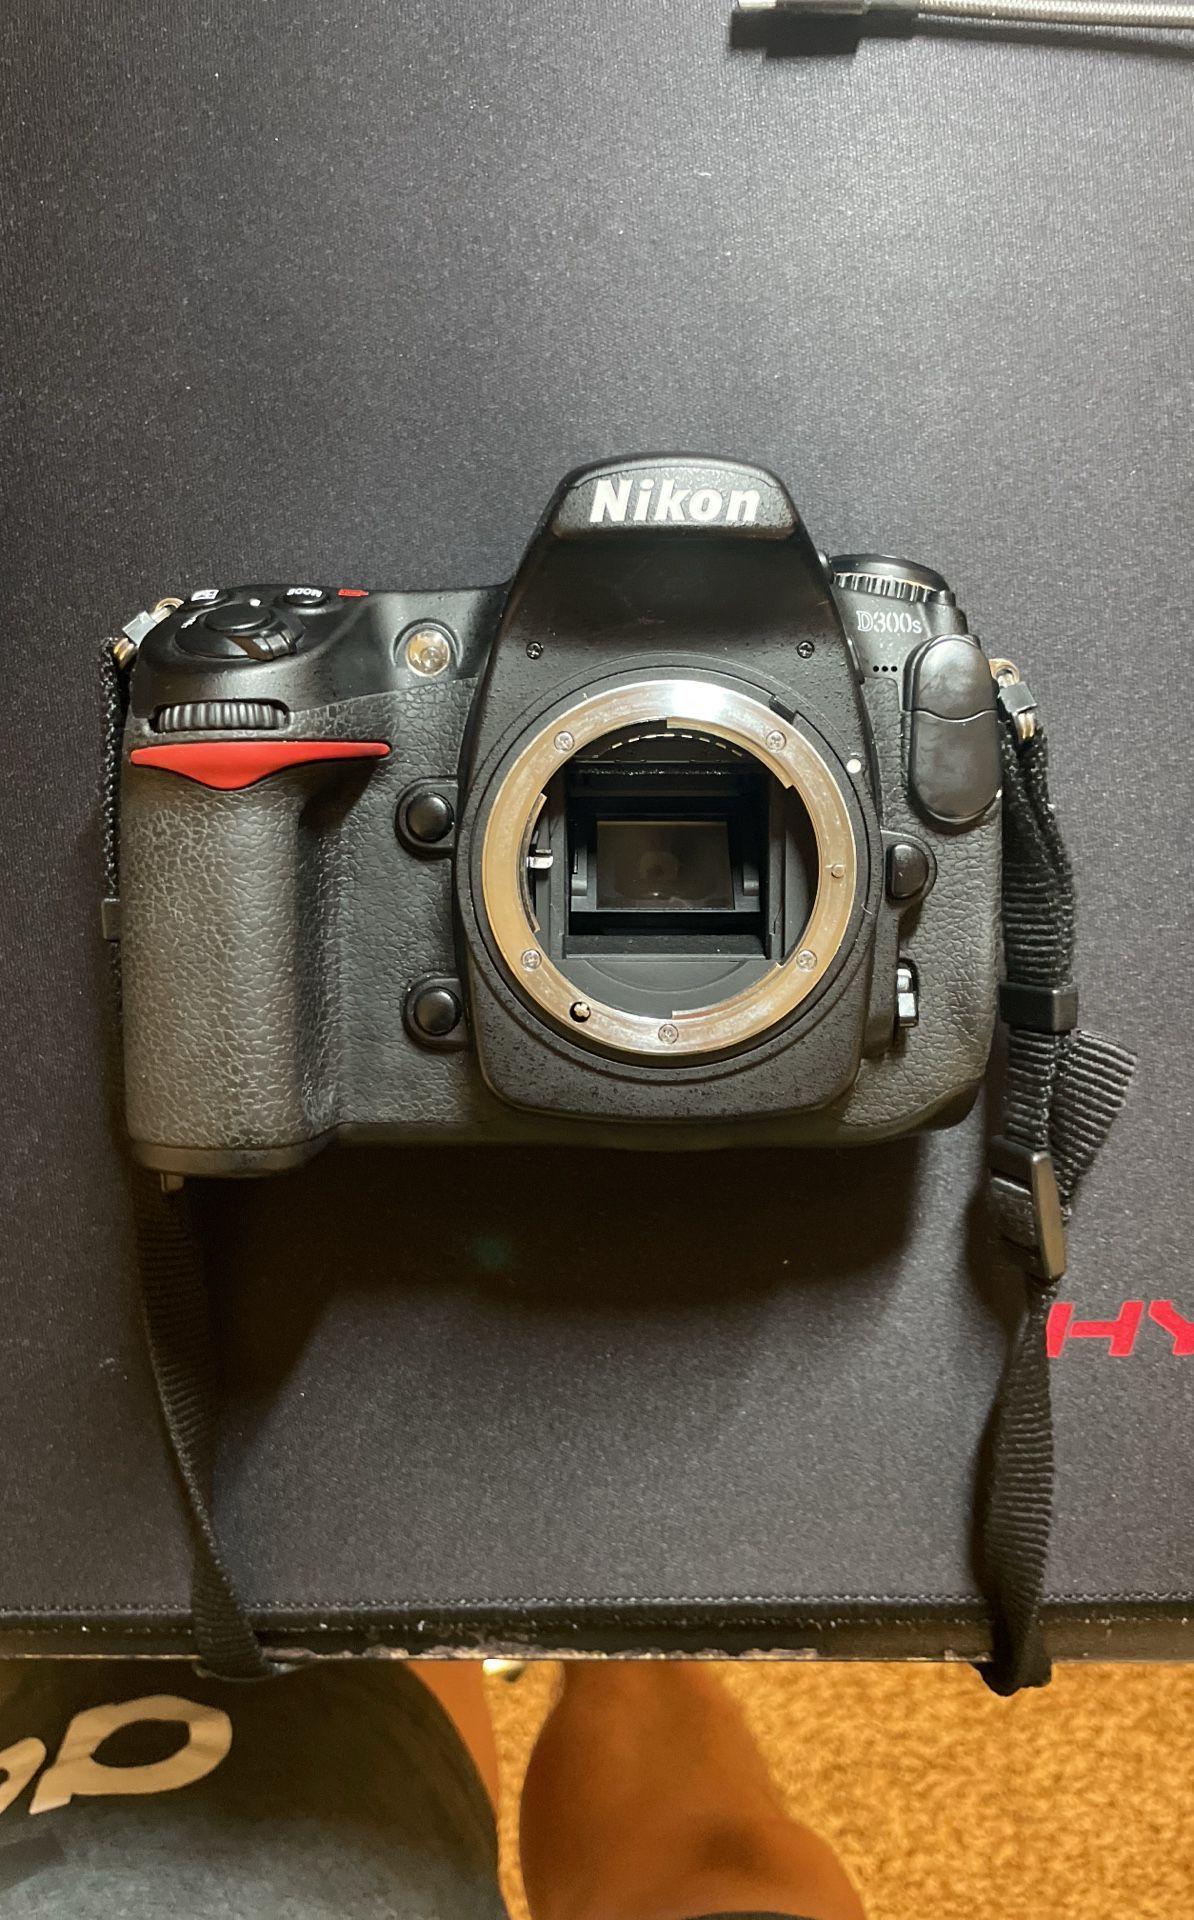 Nikon D300S + Tokina 11-16mm f/2.8 AT-X Pro DX AF Lens